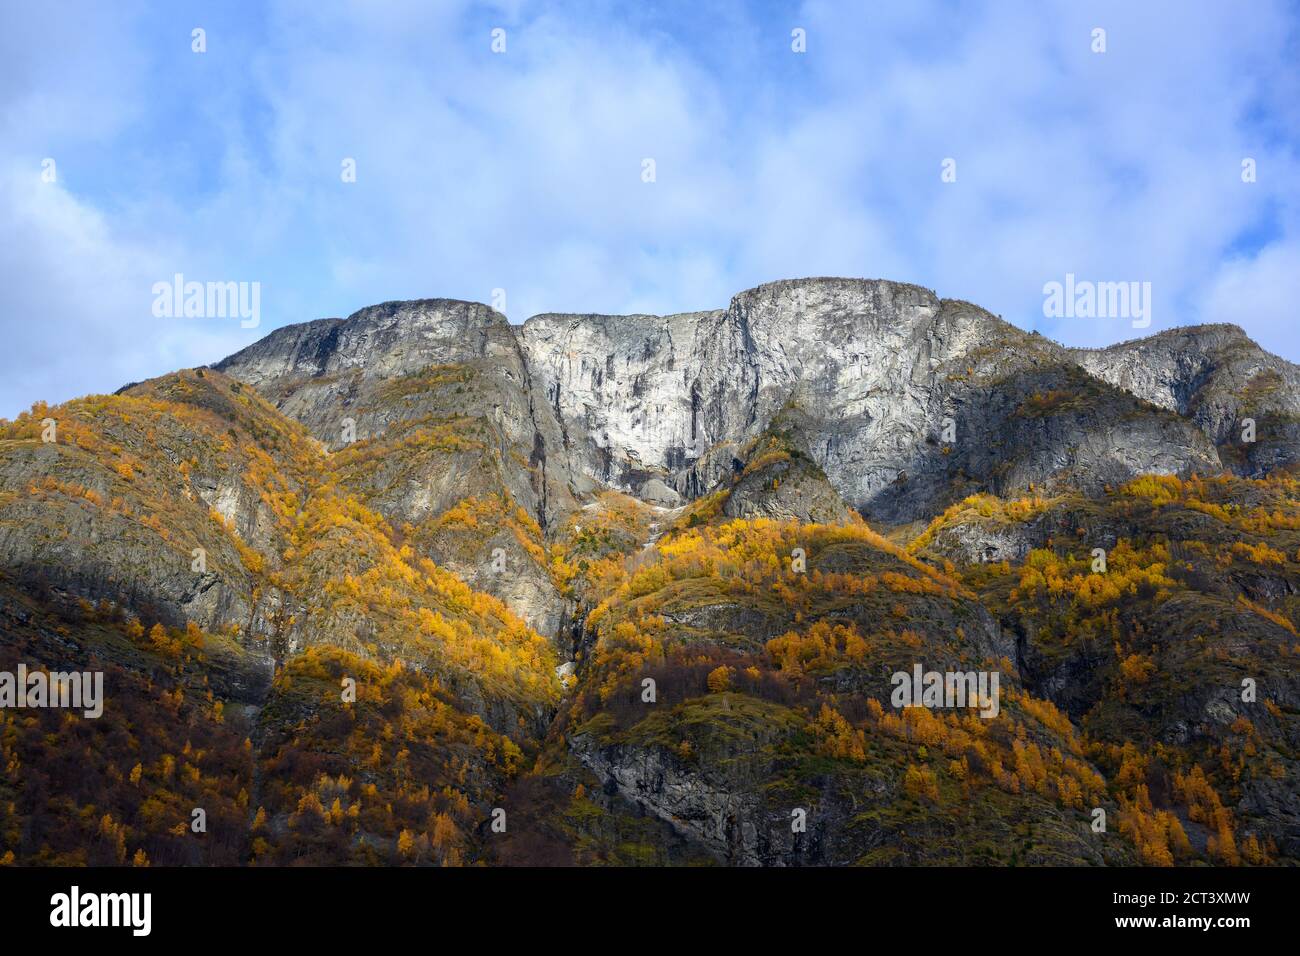 Die großen felsigen Berge auf der Spitze des Berges sind schneeweiß und blauen Himmel mit Wolken und die Blätter werden gelb in der Herbstsaison. Stockfoto